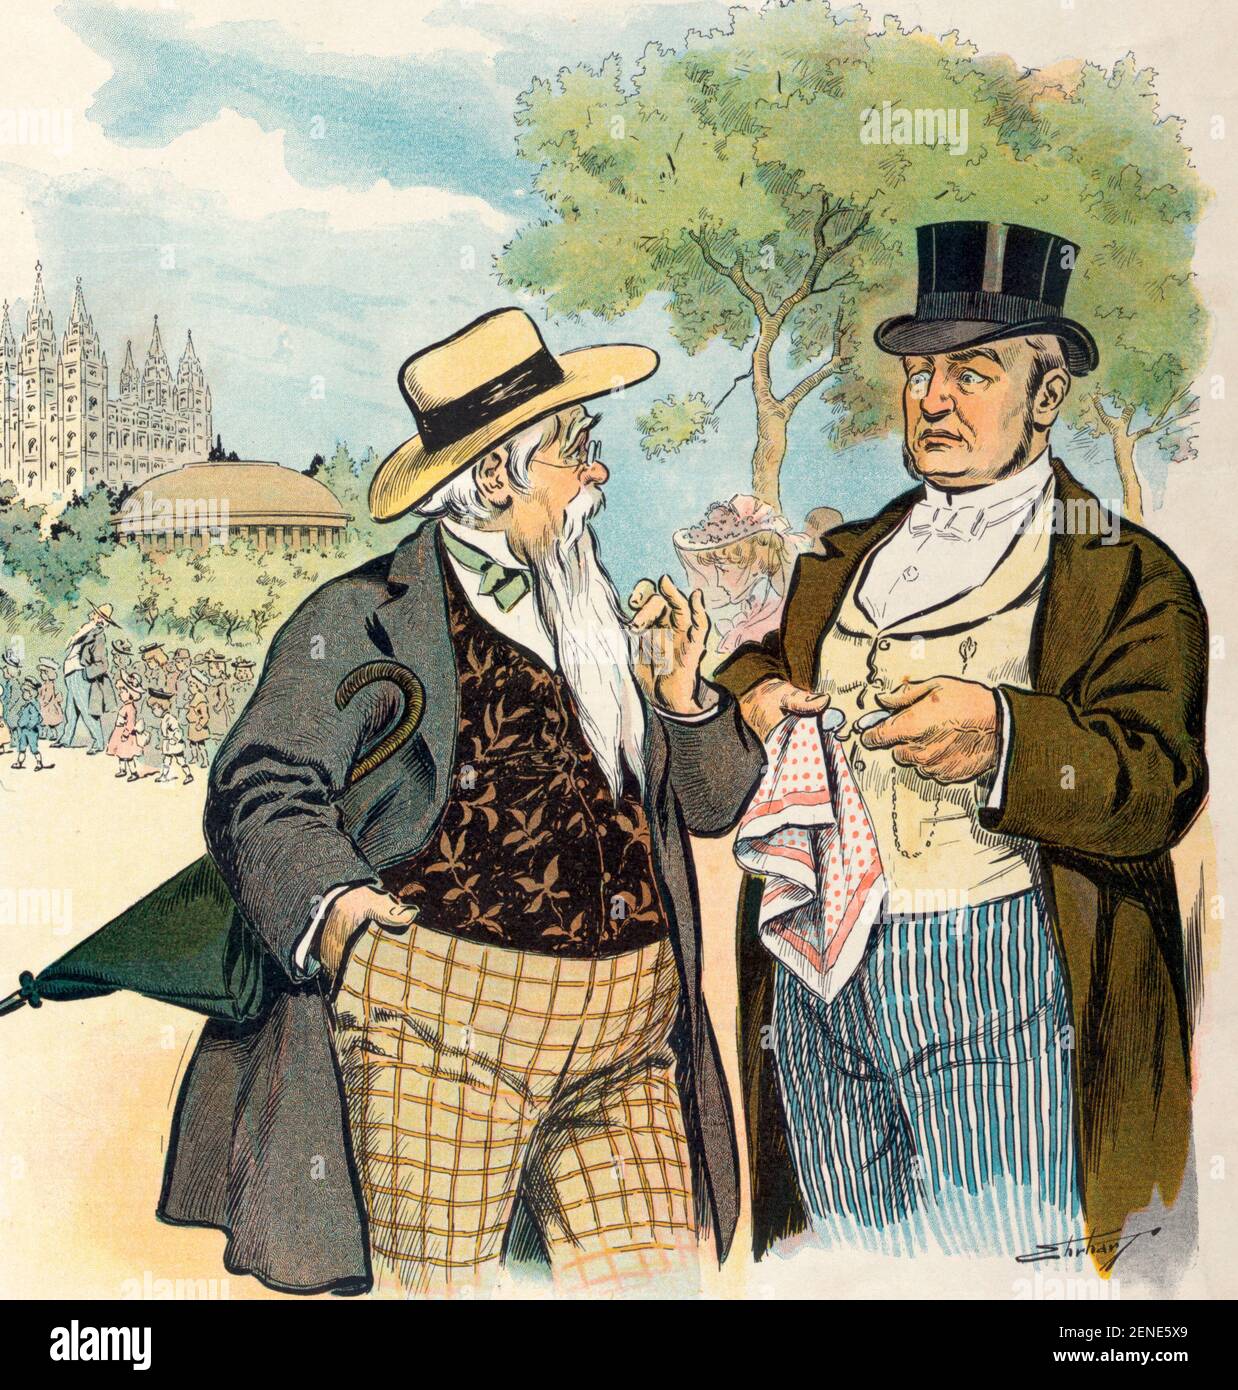 À Salt Lake City - l'illustration montre deux anciens mormon discutant d'un autre mormon qui a été reconnu coupable de bigamie - Cartoon politique, 1904 Banque D'Images